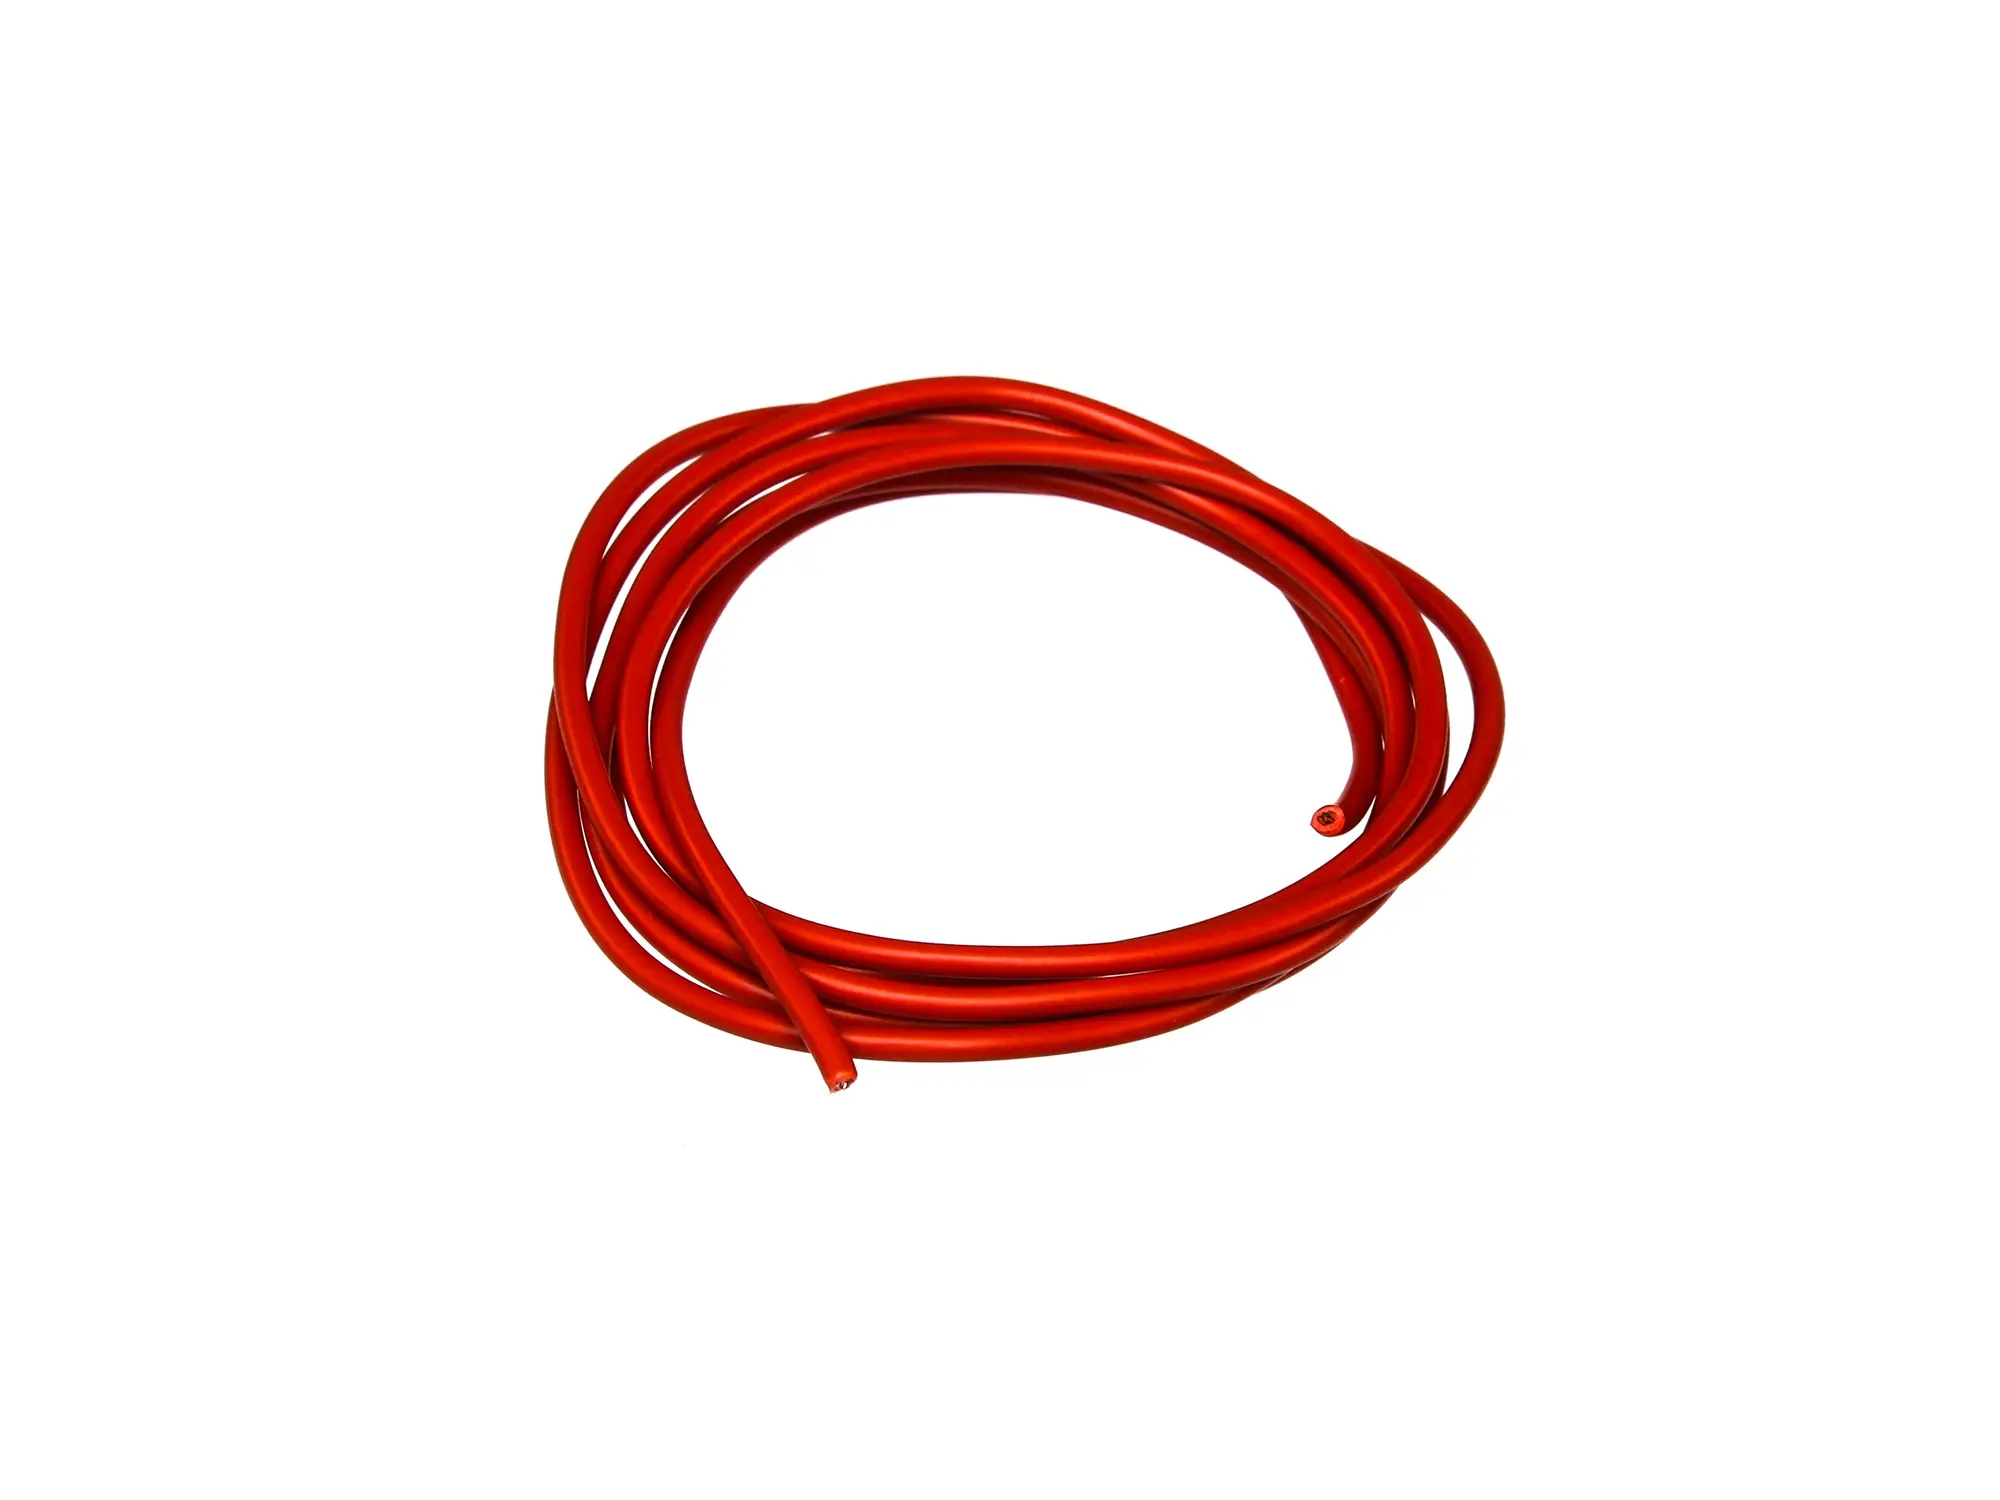 Kabel - Rot 0,50mm² Fahrzeugleitung - 1m, Art.-Nr.: 10001769 - Bild 1